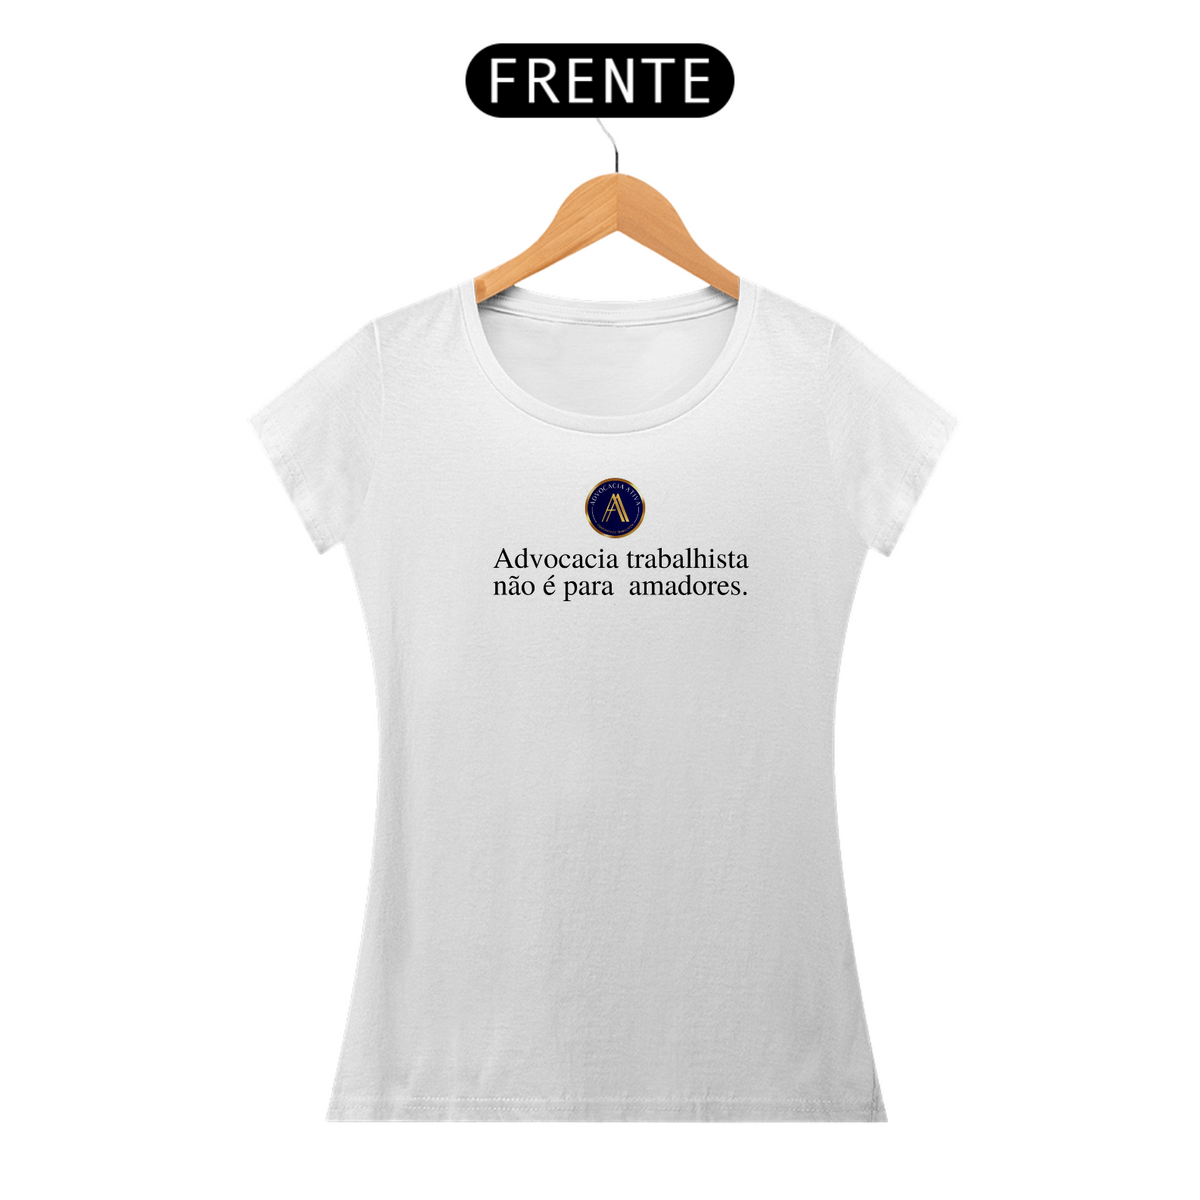 Nome do produto: Camiseta feminina - Não é para amadores